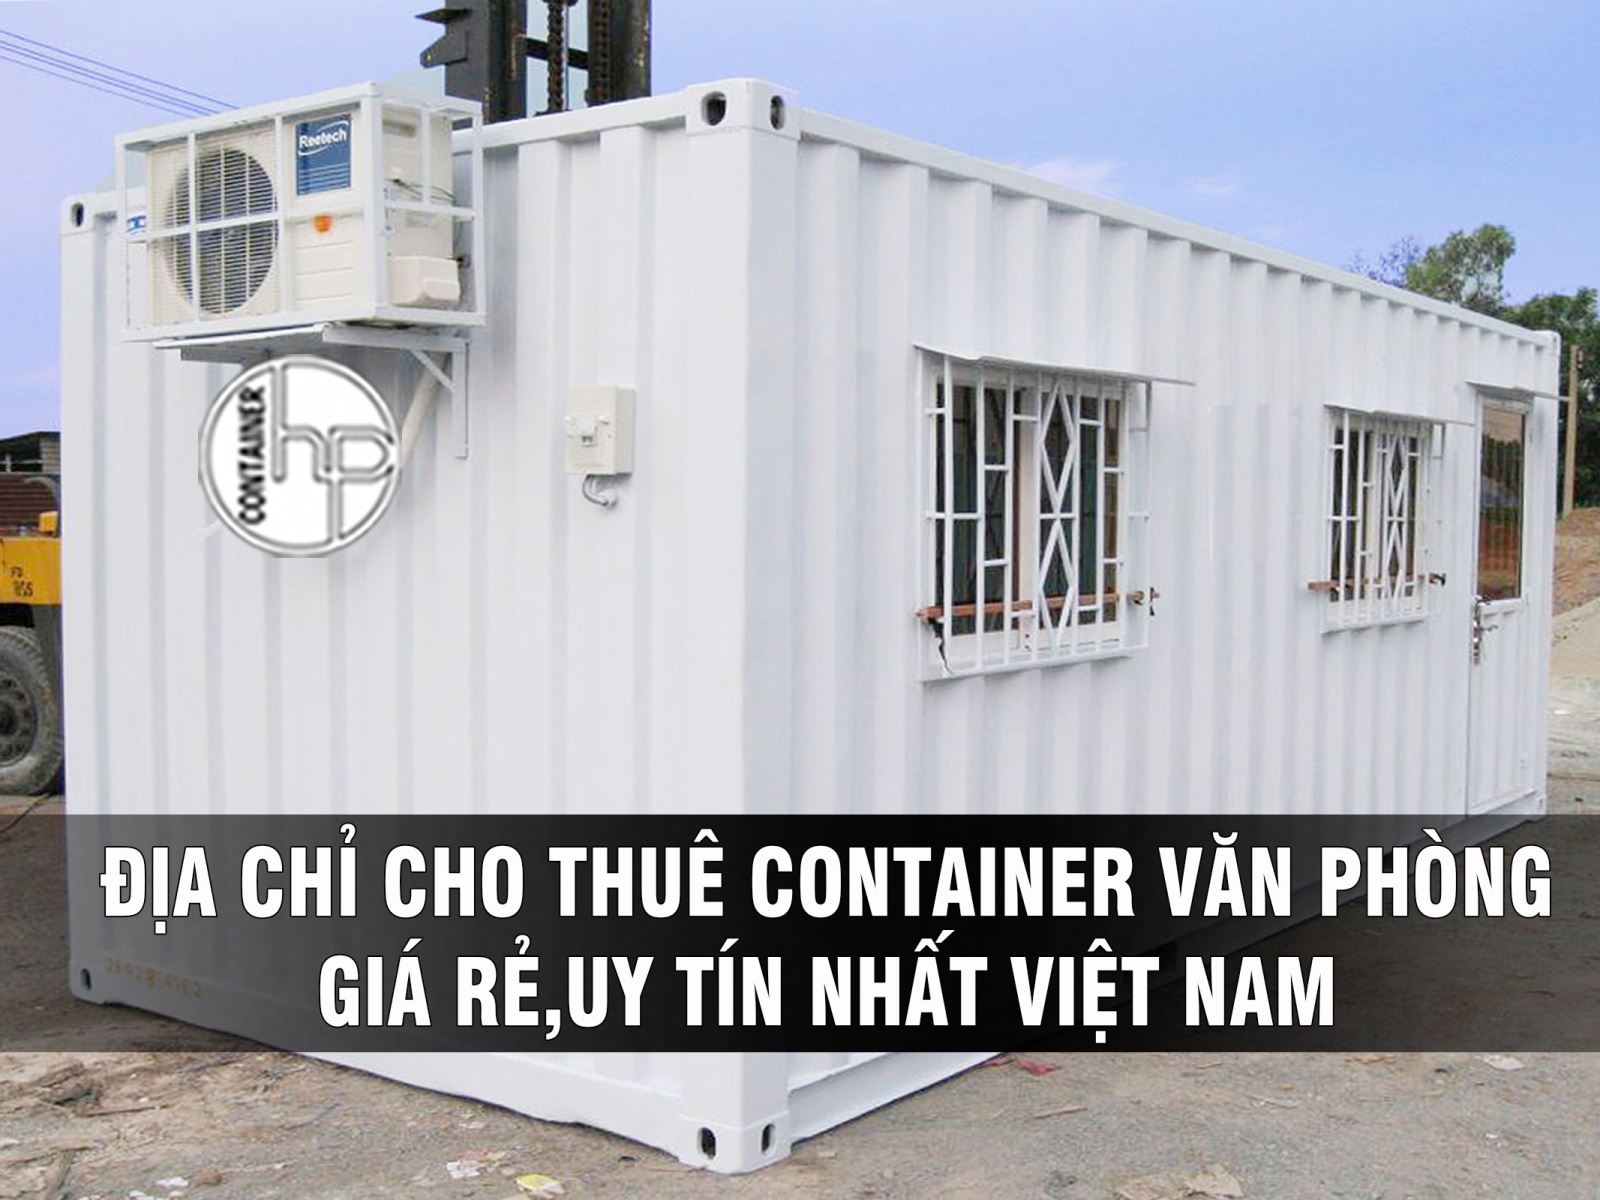 Địa chỉ cho thuê container văn phòng giá rẻ uy tín nhất Việt Nam